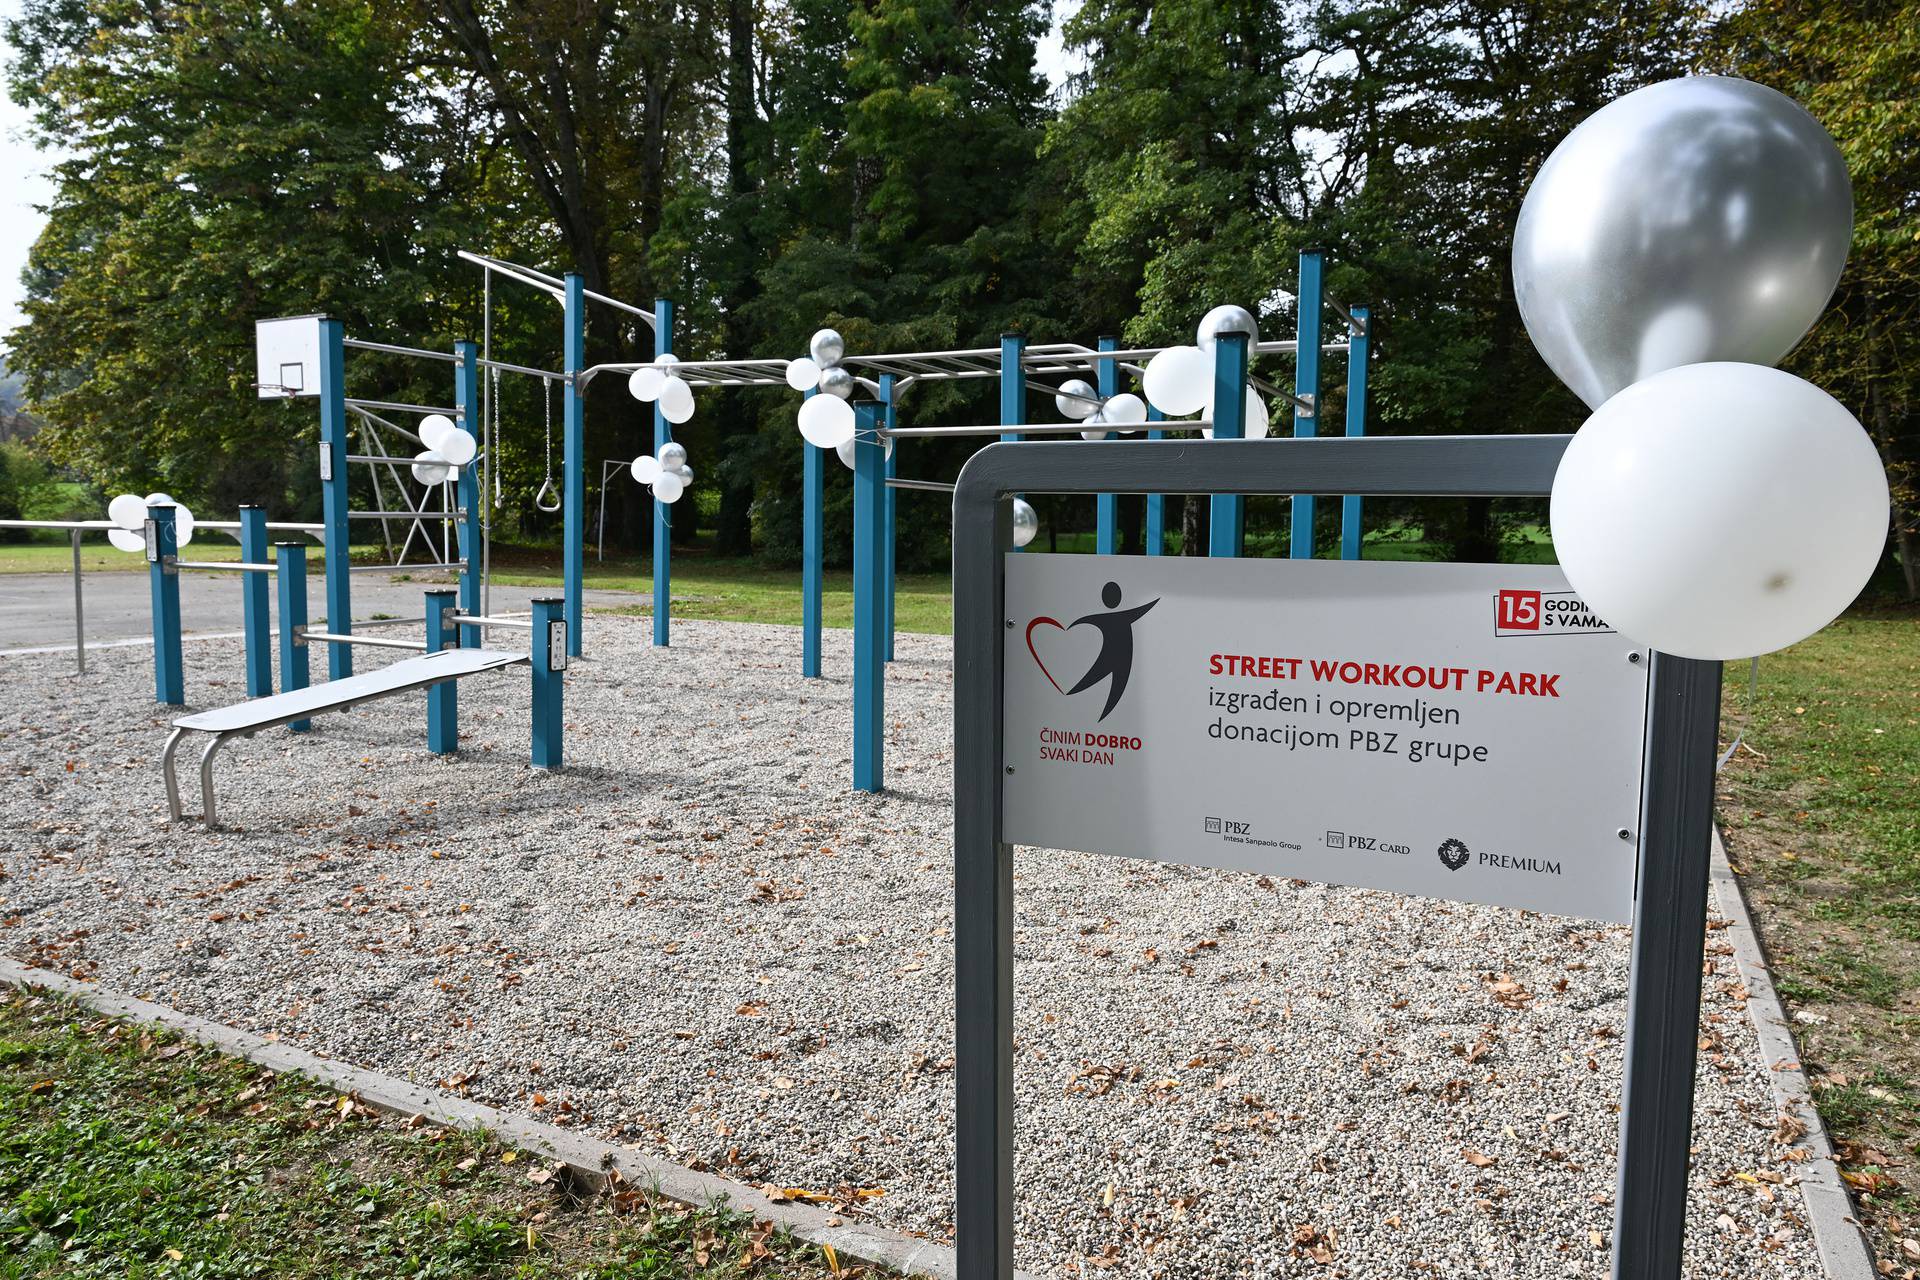 Centar za odgoj i obrazovanje Lug proslavio je svoj dan otvorivši street workout park